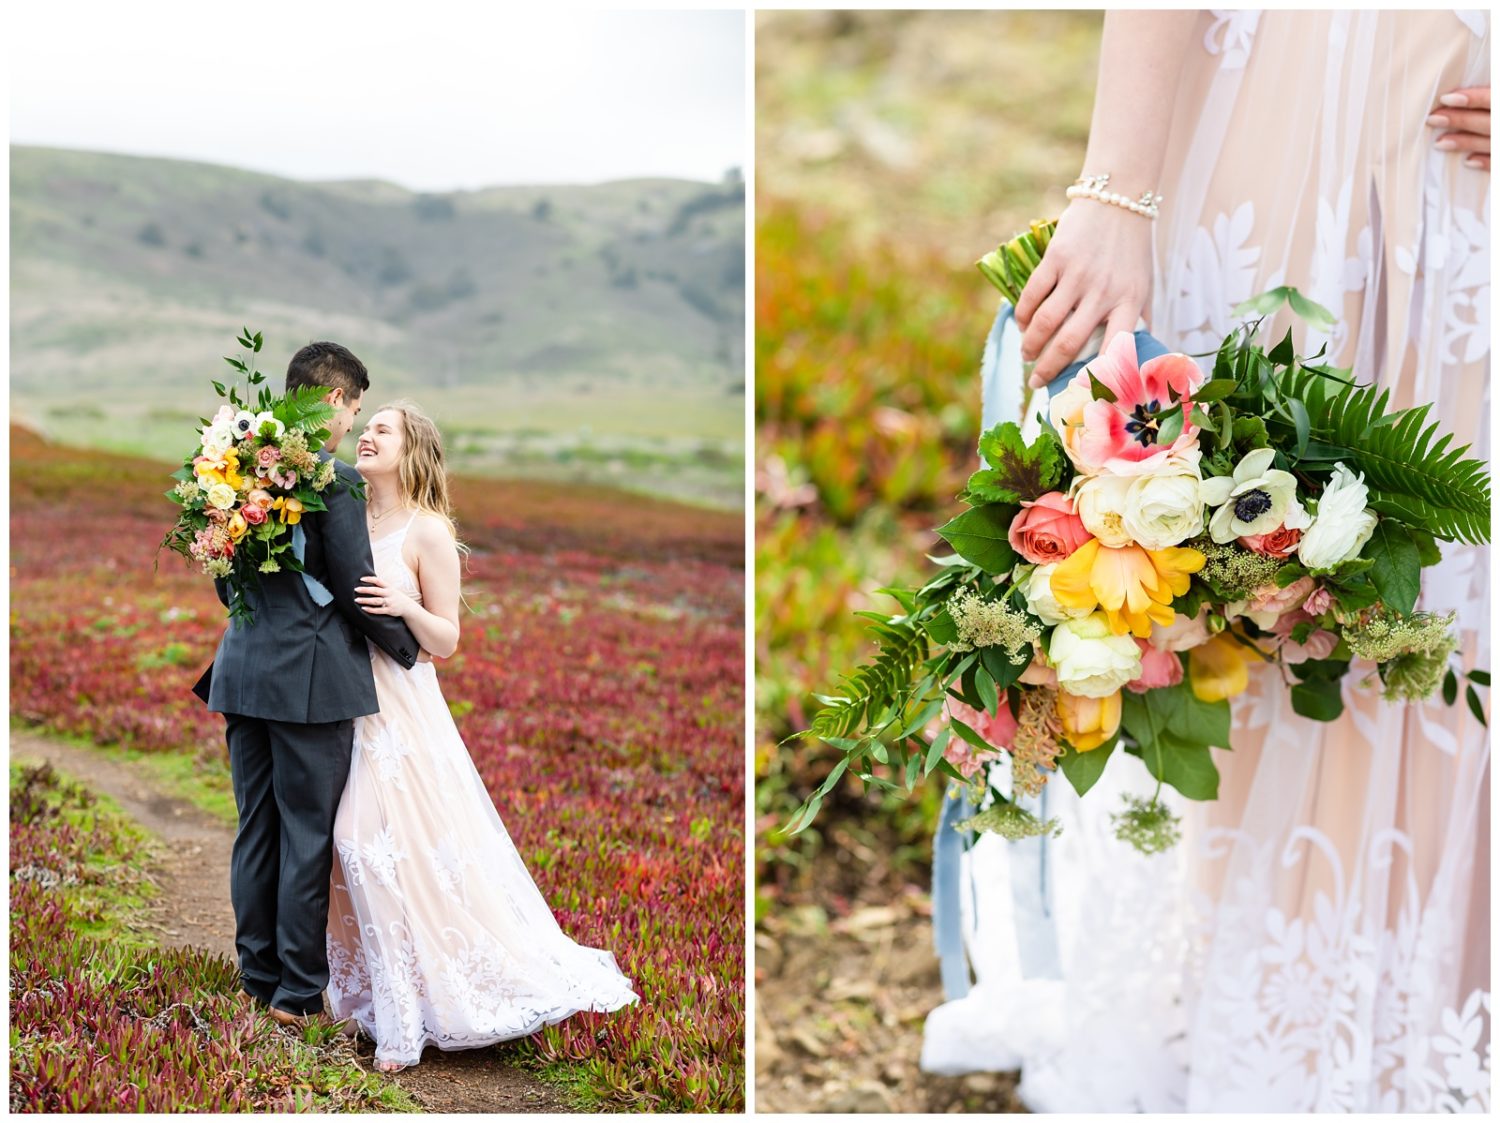 Bodega Bay California Elopement Wedding Photos